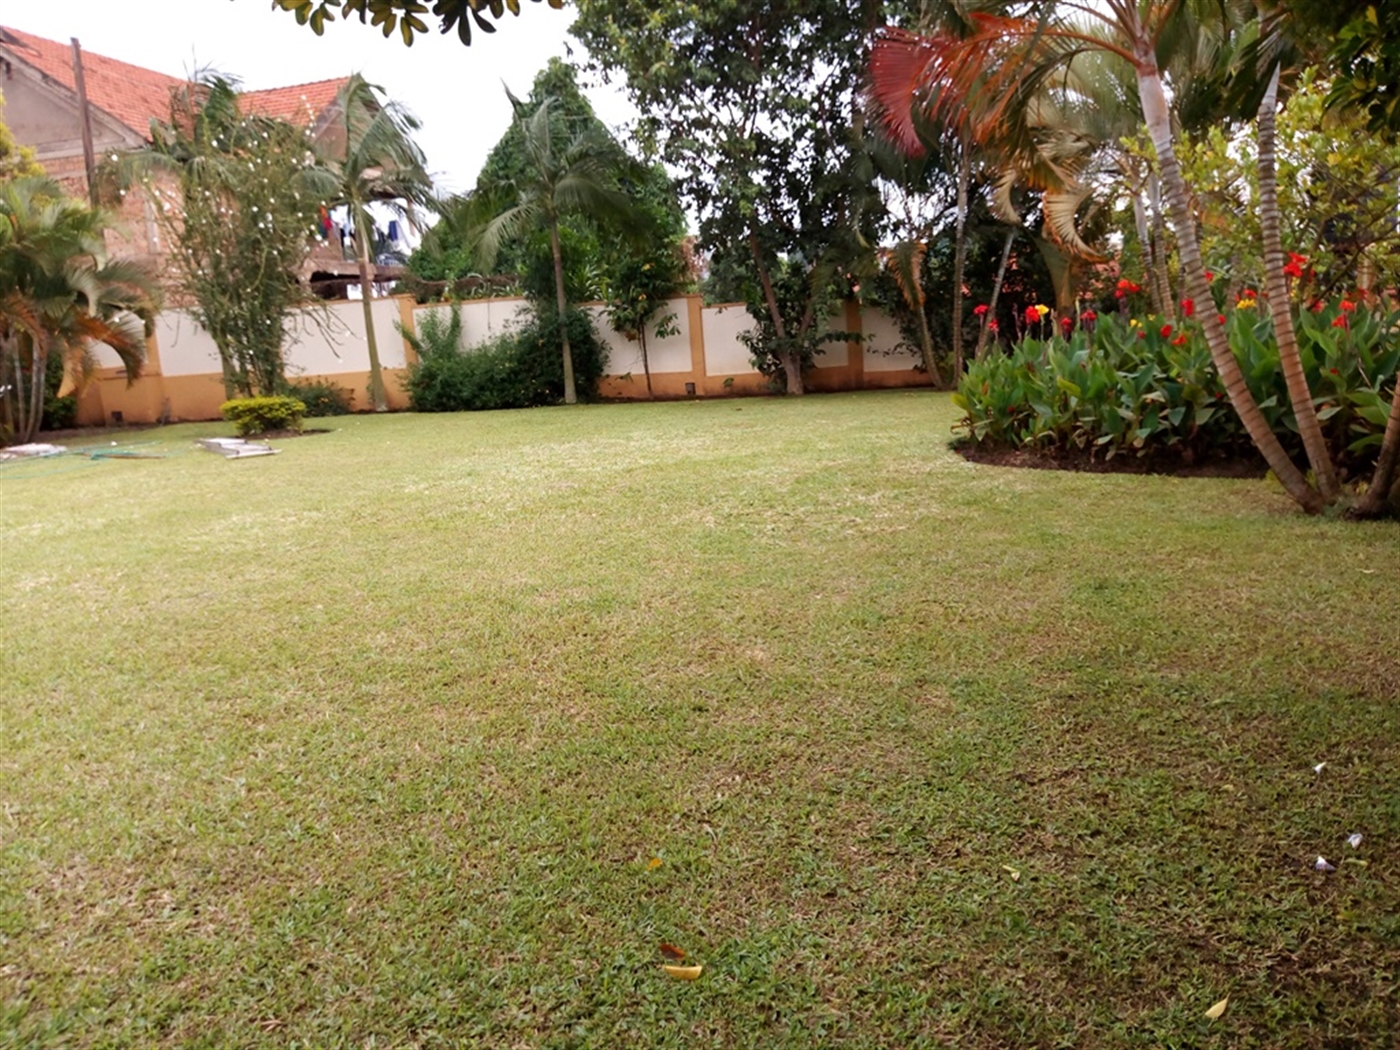 Maisonette for rent in Naguru Kampala